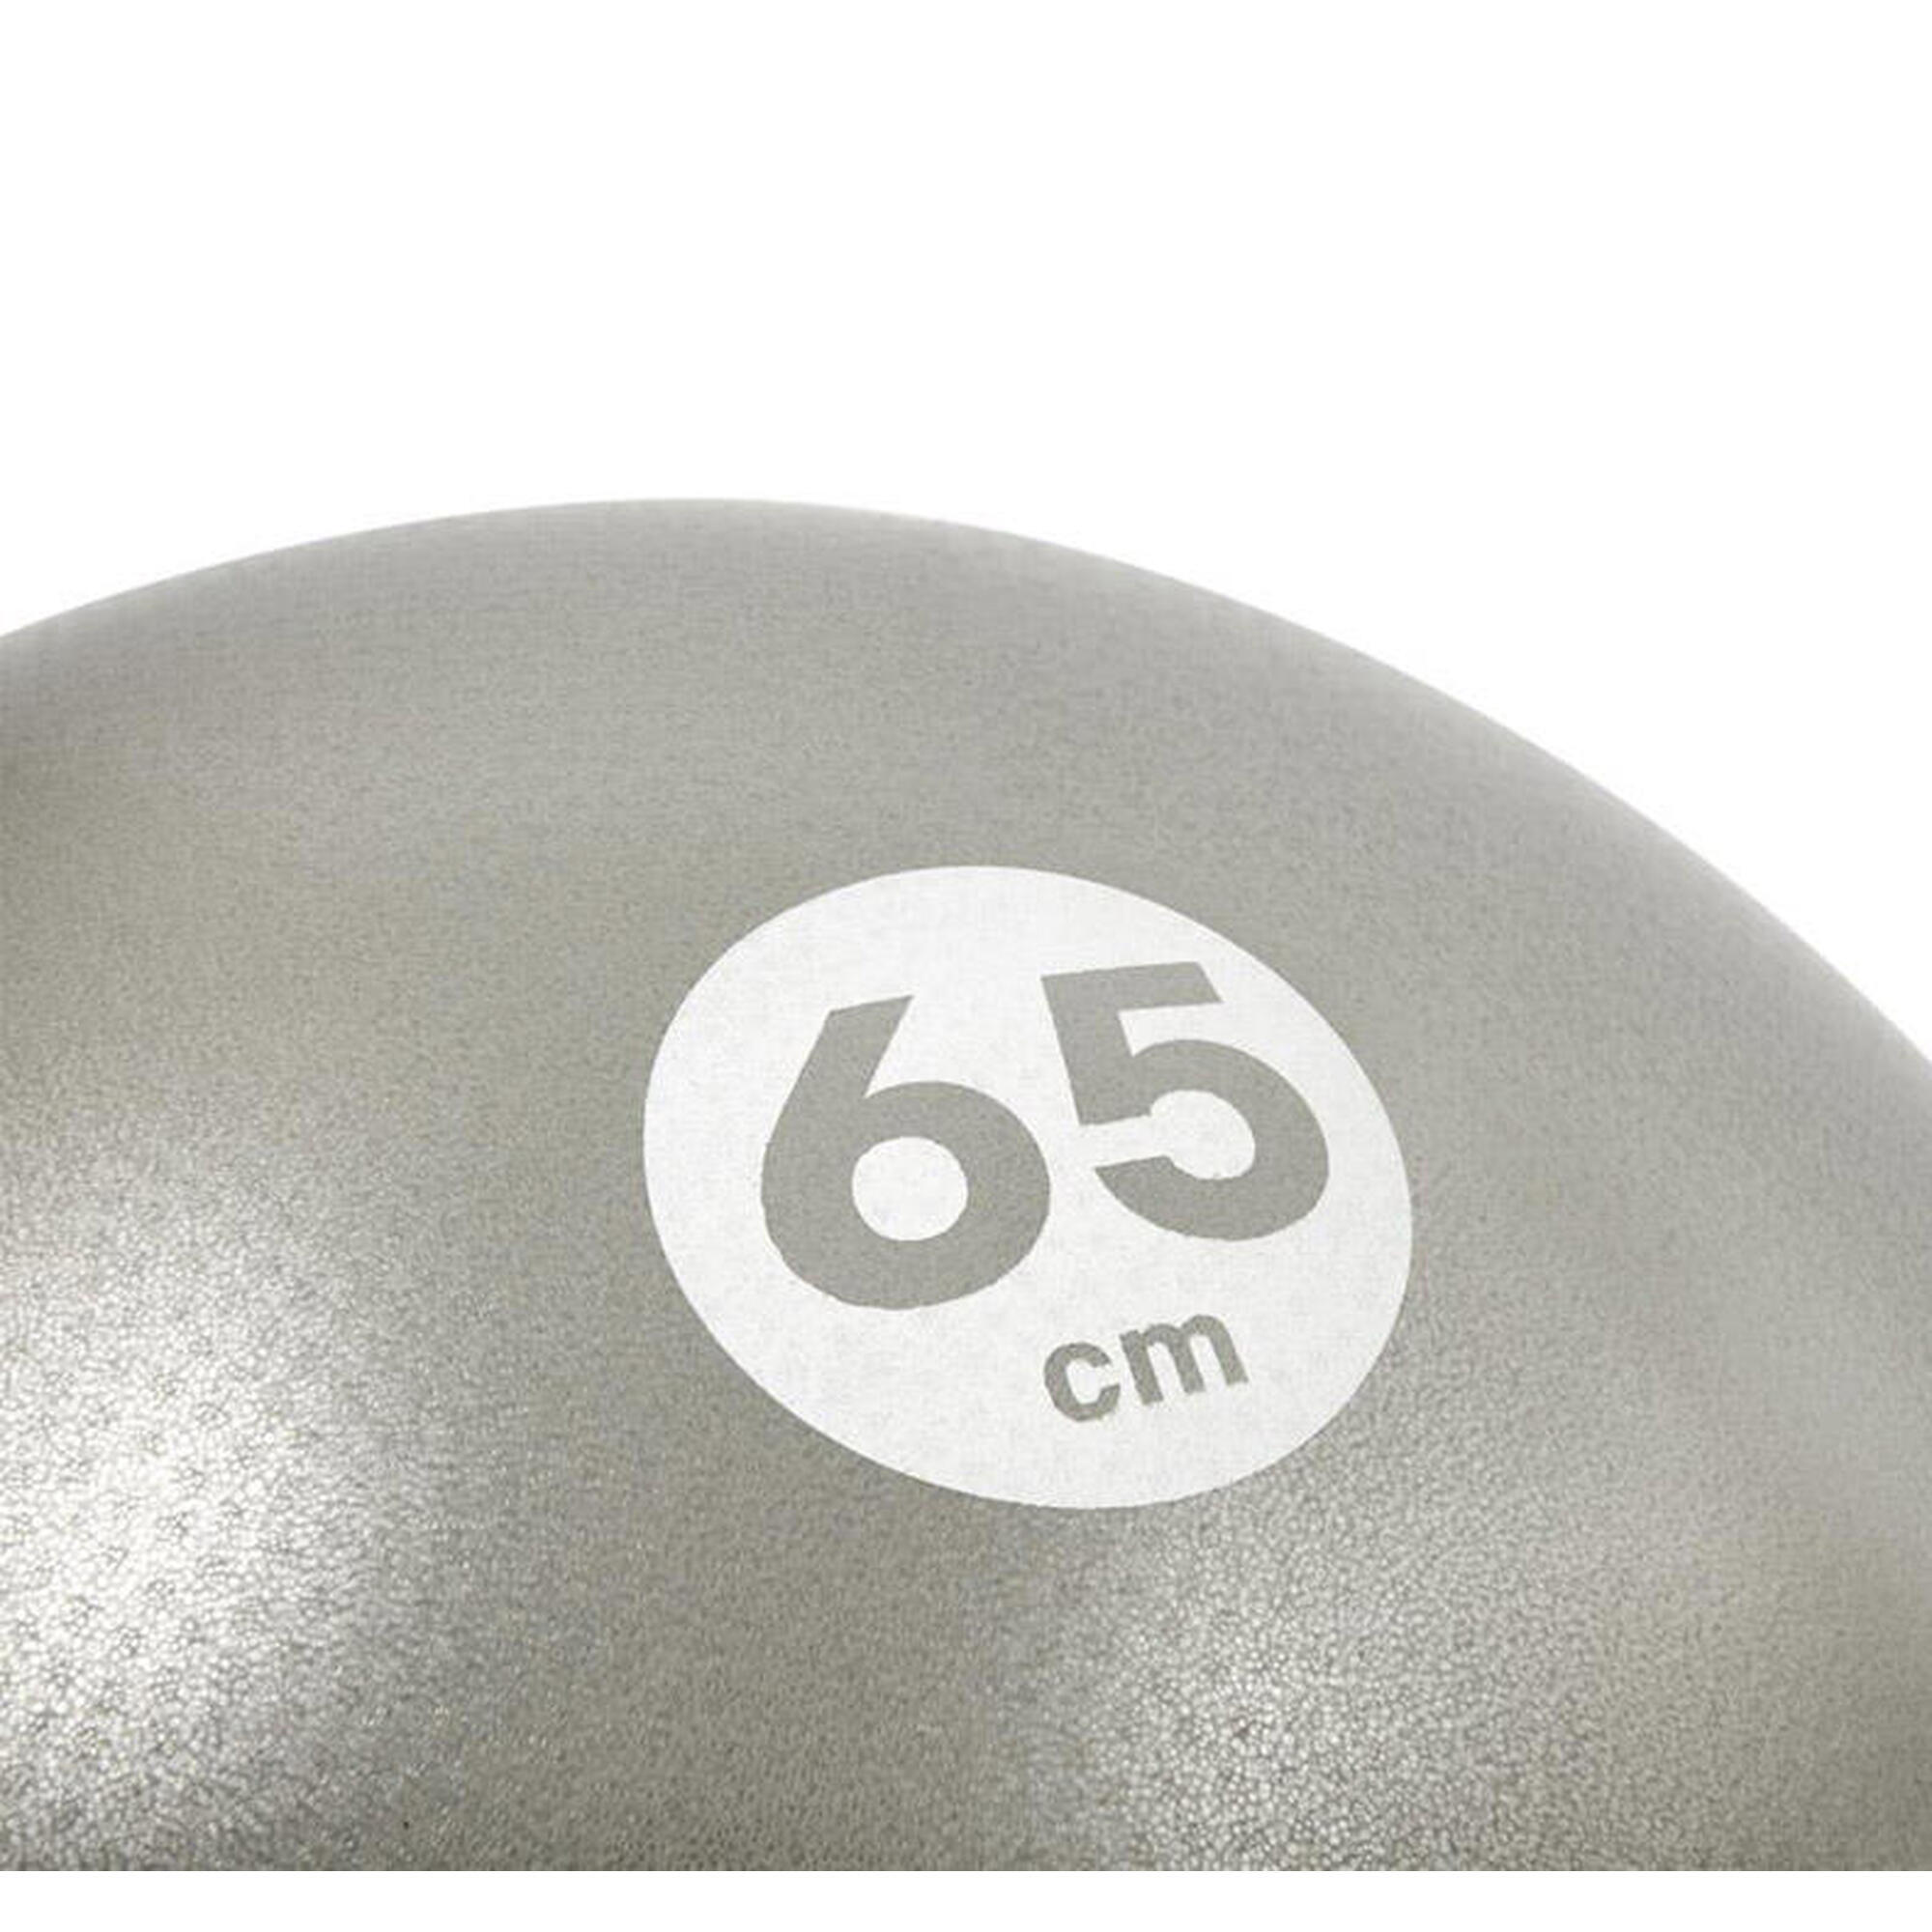 Piłka gimnastyczna Reebok 65 cm szara